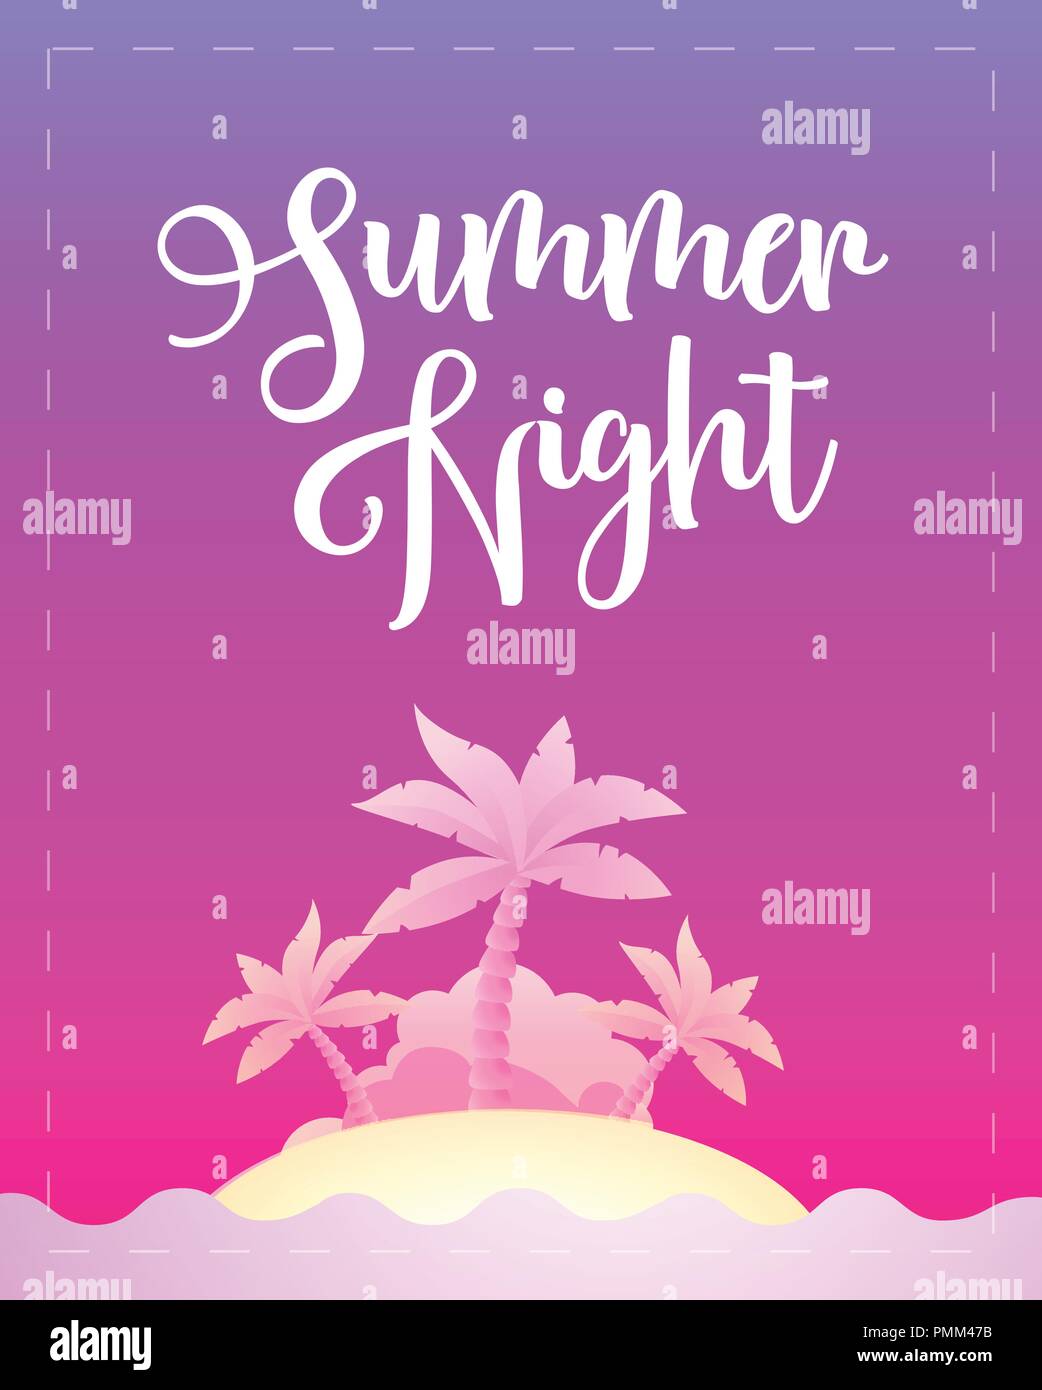 Nuit d'été - Modèle poster pour partie, voyage, maison de vacances dans la belle nuit d'été. Vector illustration en couleurs violet, EPS 10. Illustration de Vecteur